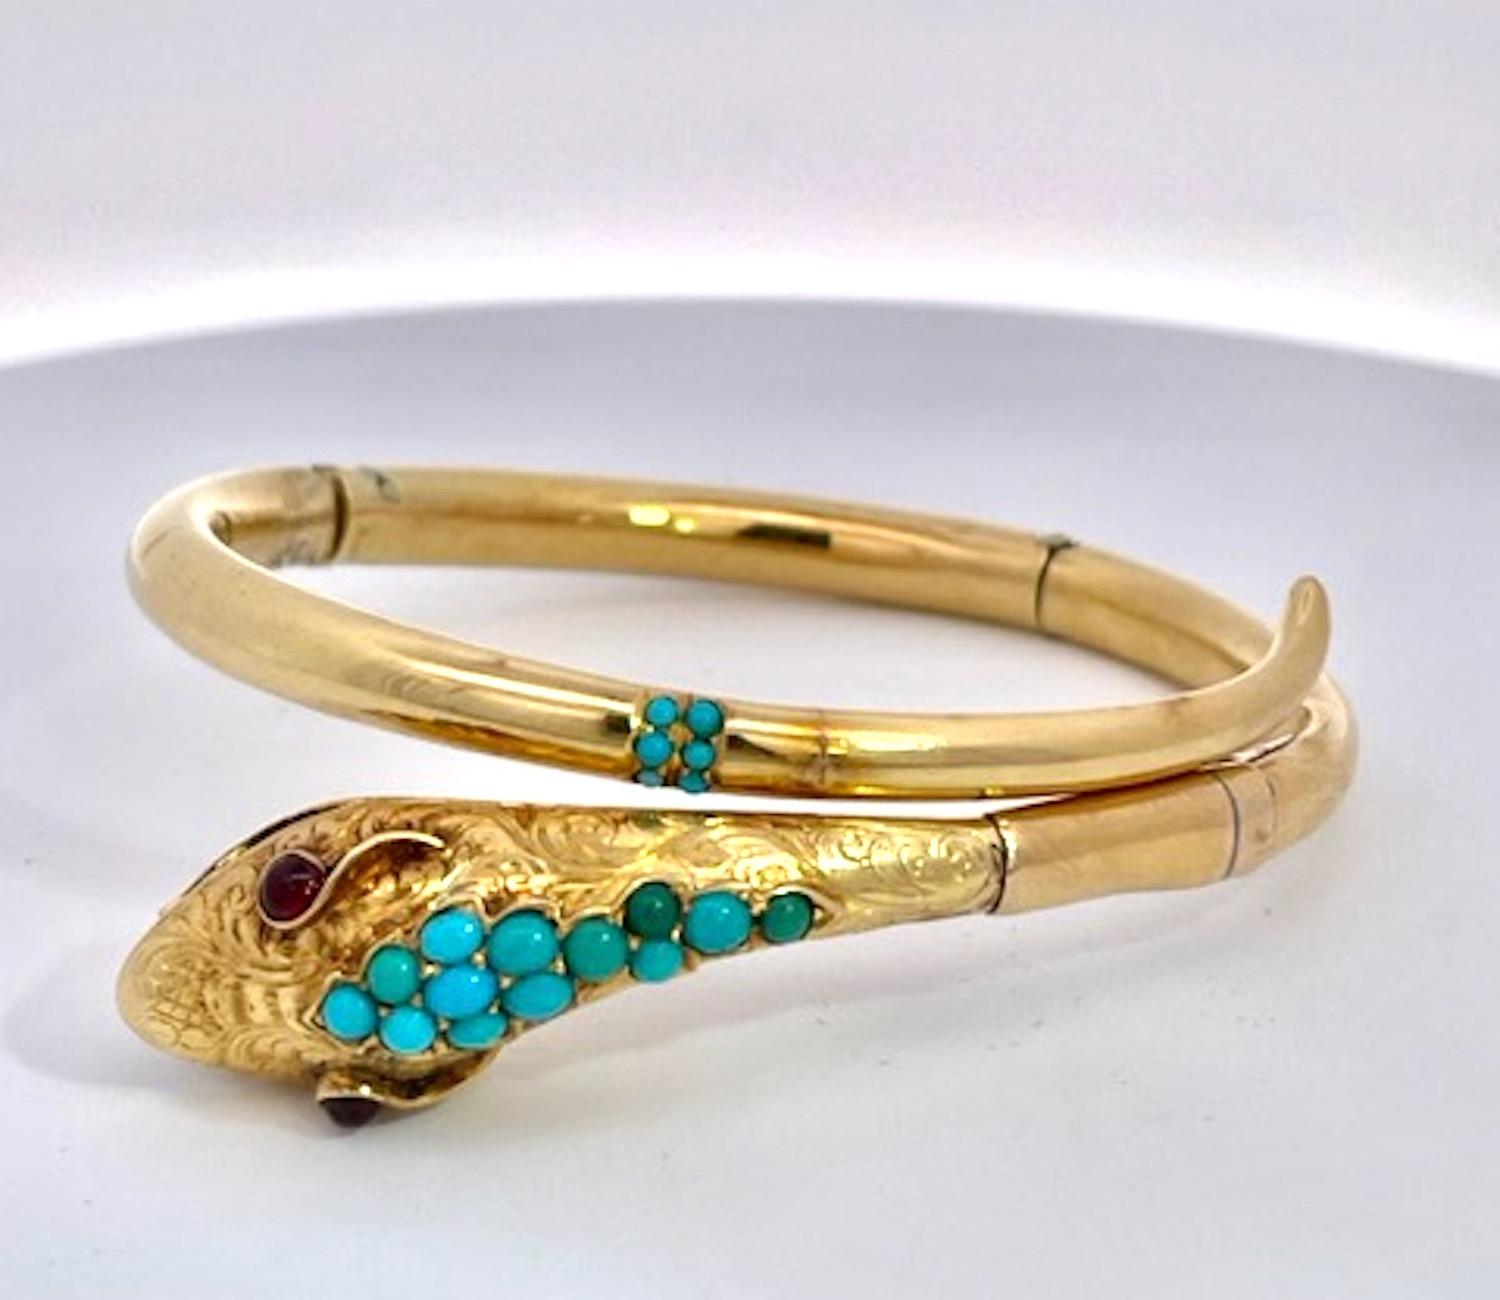 Voici un autre magnifique bracelet serpent.
Celui-ci est réalisé en or jaune 14 carats et orné de superbes perles de turquoise (persane) sur la tête et quelques unes dispersées autour de la queue.  Ce bracelet est simple et doux, mais il a du